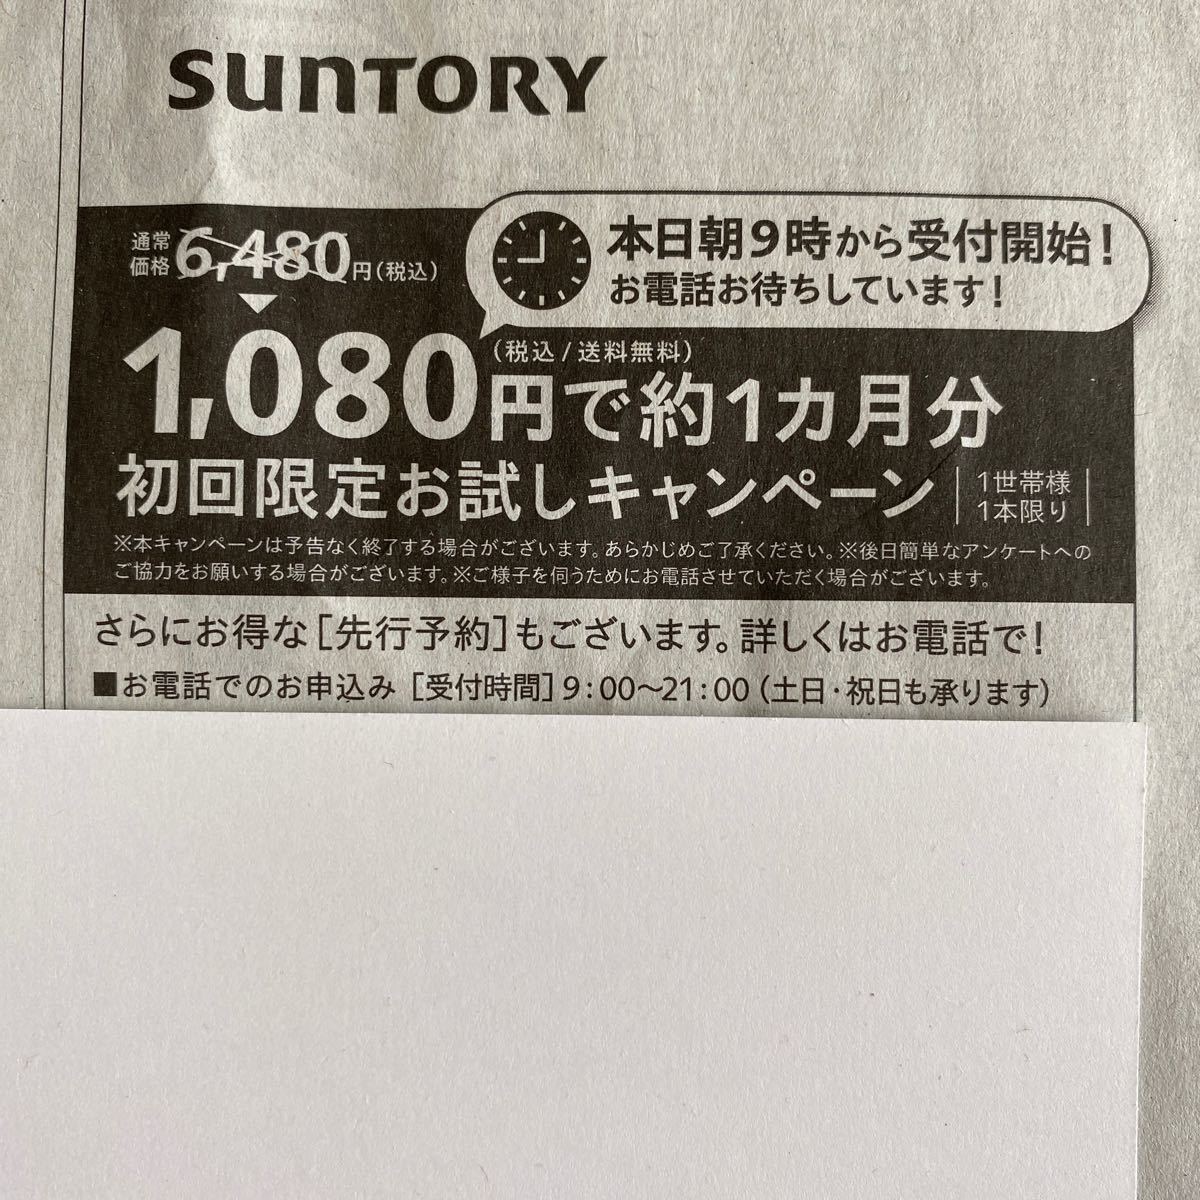 サントリー オメガエイド 180粒(約30日分) 初回限定 1 080円で申込可能